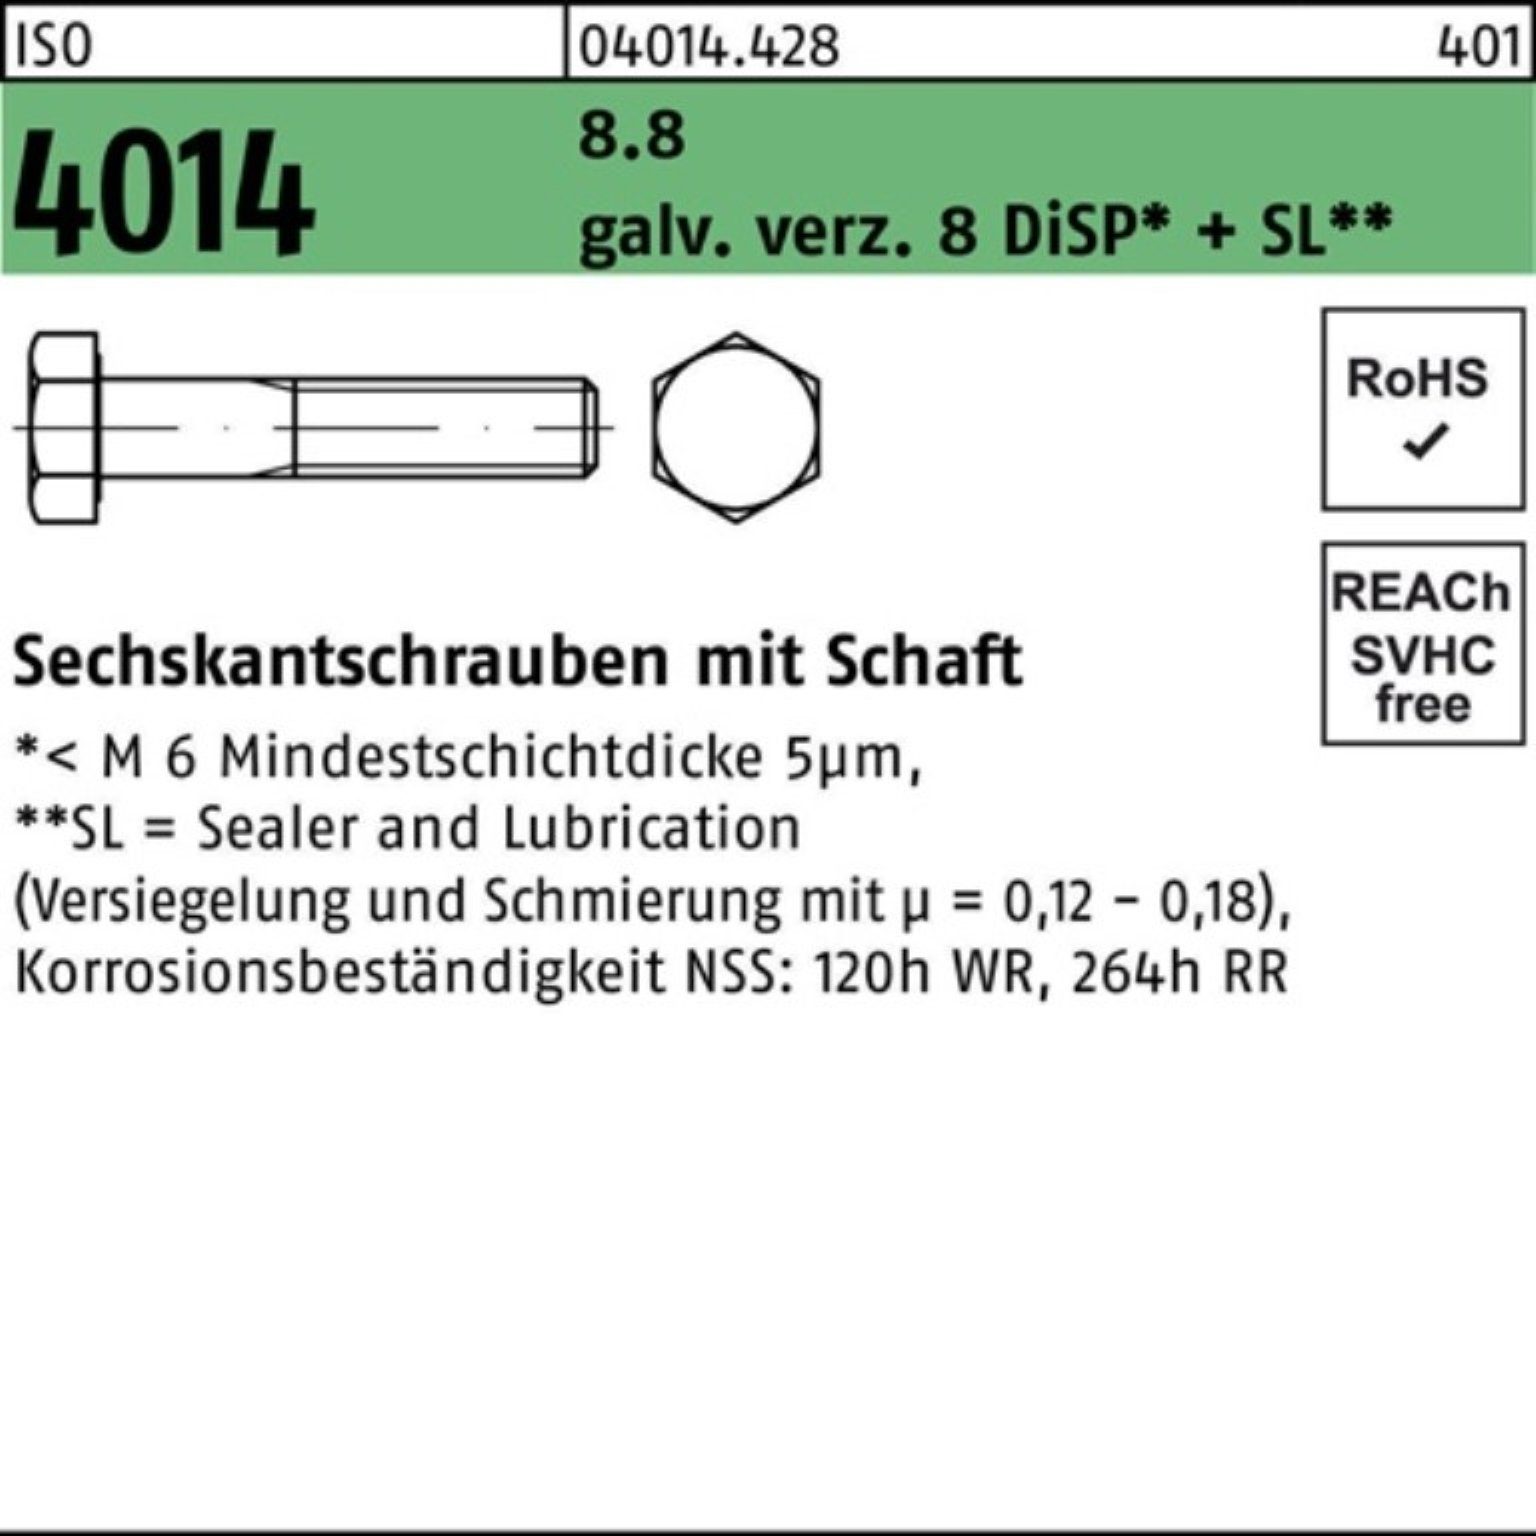 Bufab Sechskantschraube 100er Pack Sechskantschraube 8.8 galv.verz. ISO M16x280 4014 Schaft 8